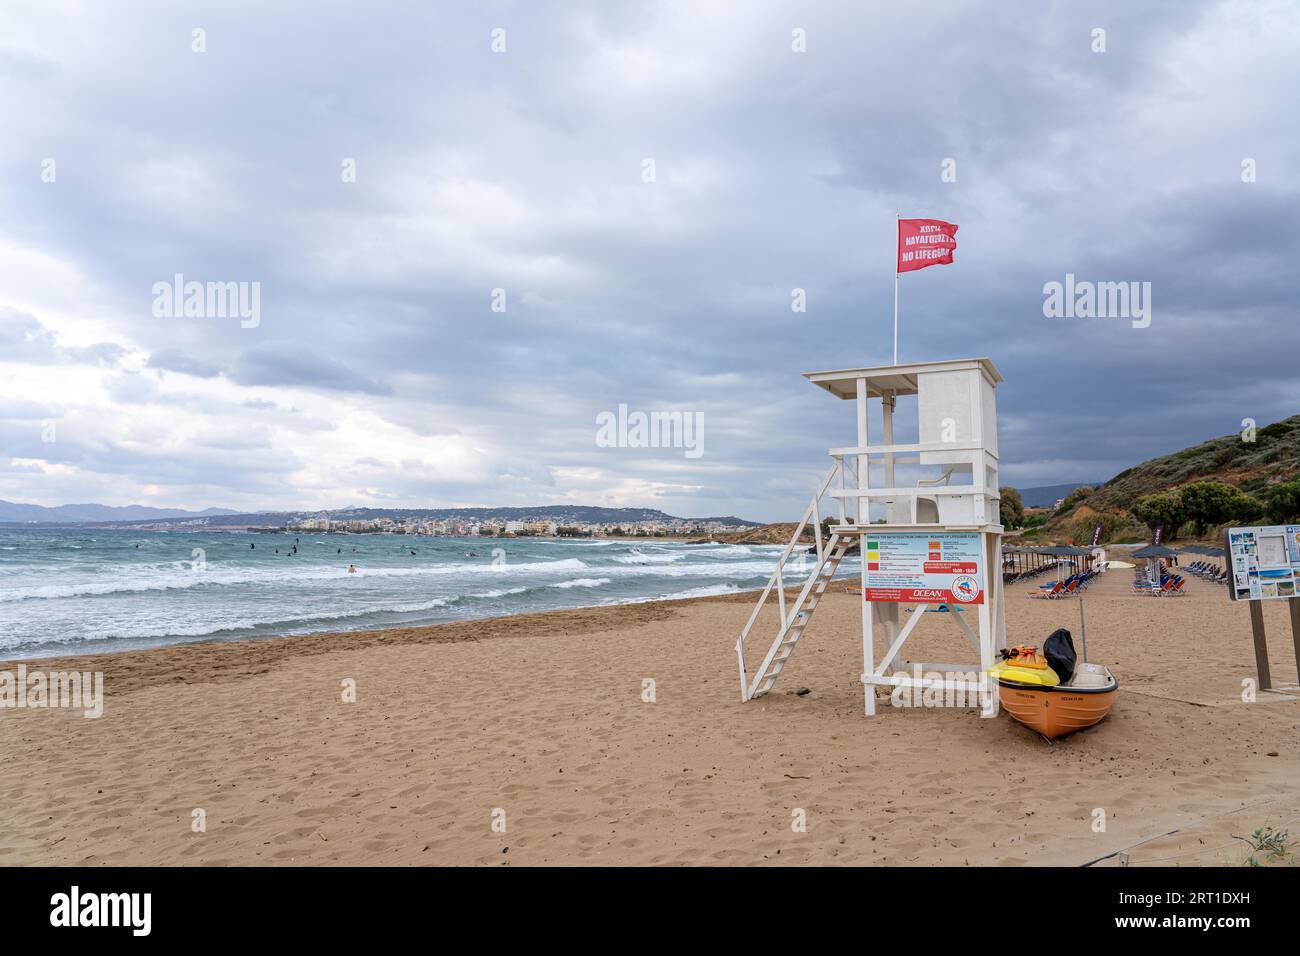 Crete, Greece, Septmeber 23, 2021: A lifeguard tower at the Golden Beach near Chania Town Stock Photo